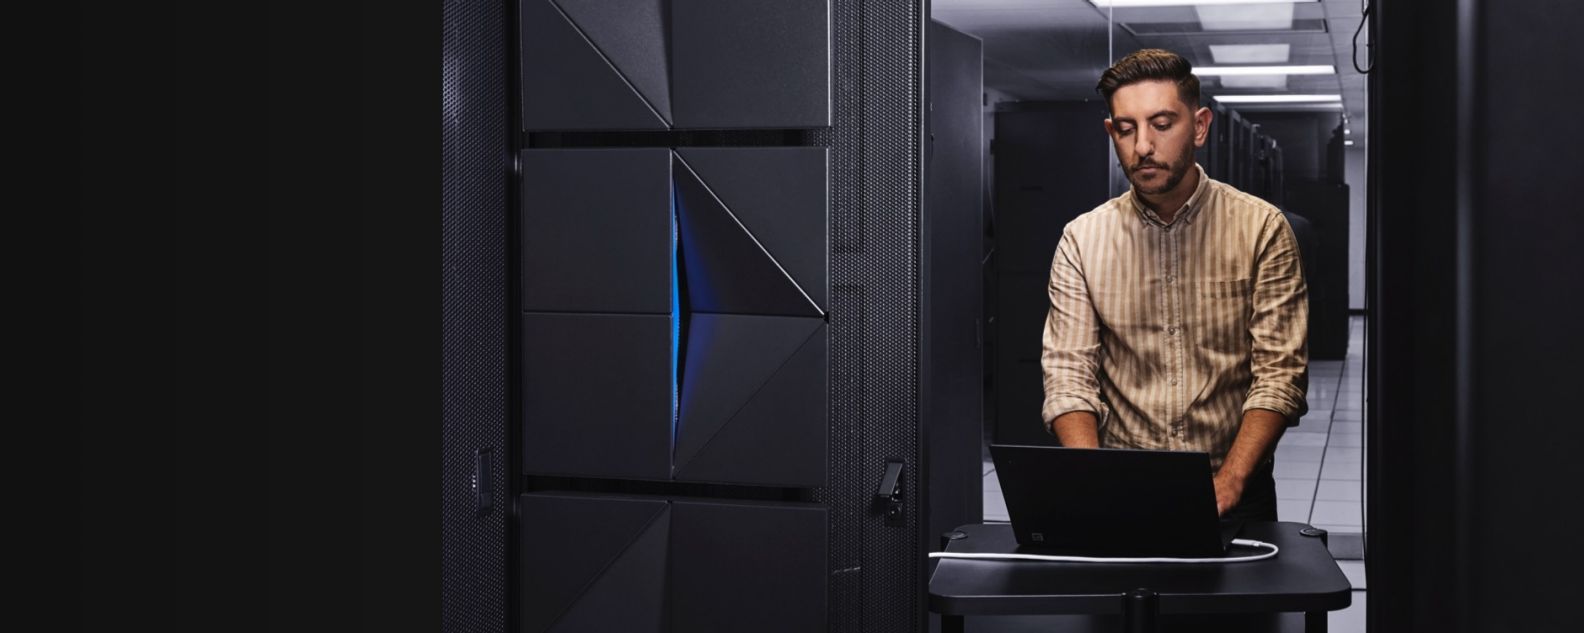 Mainframe-Serverraum mit Person am Computer